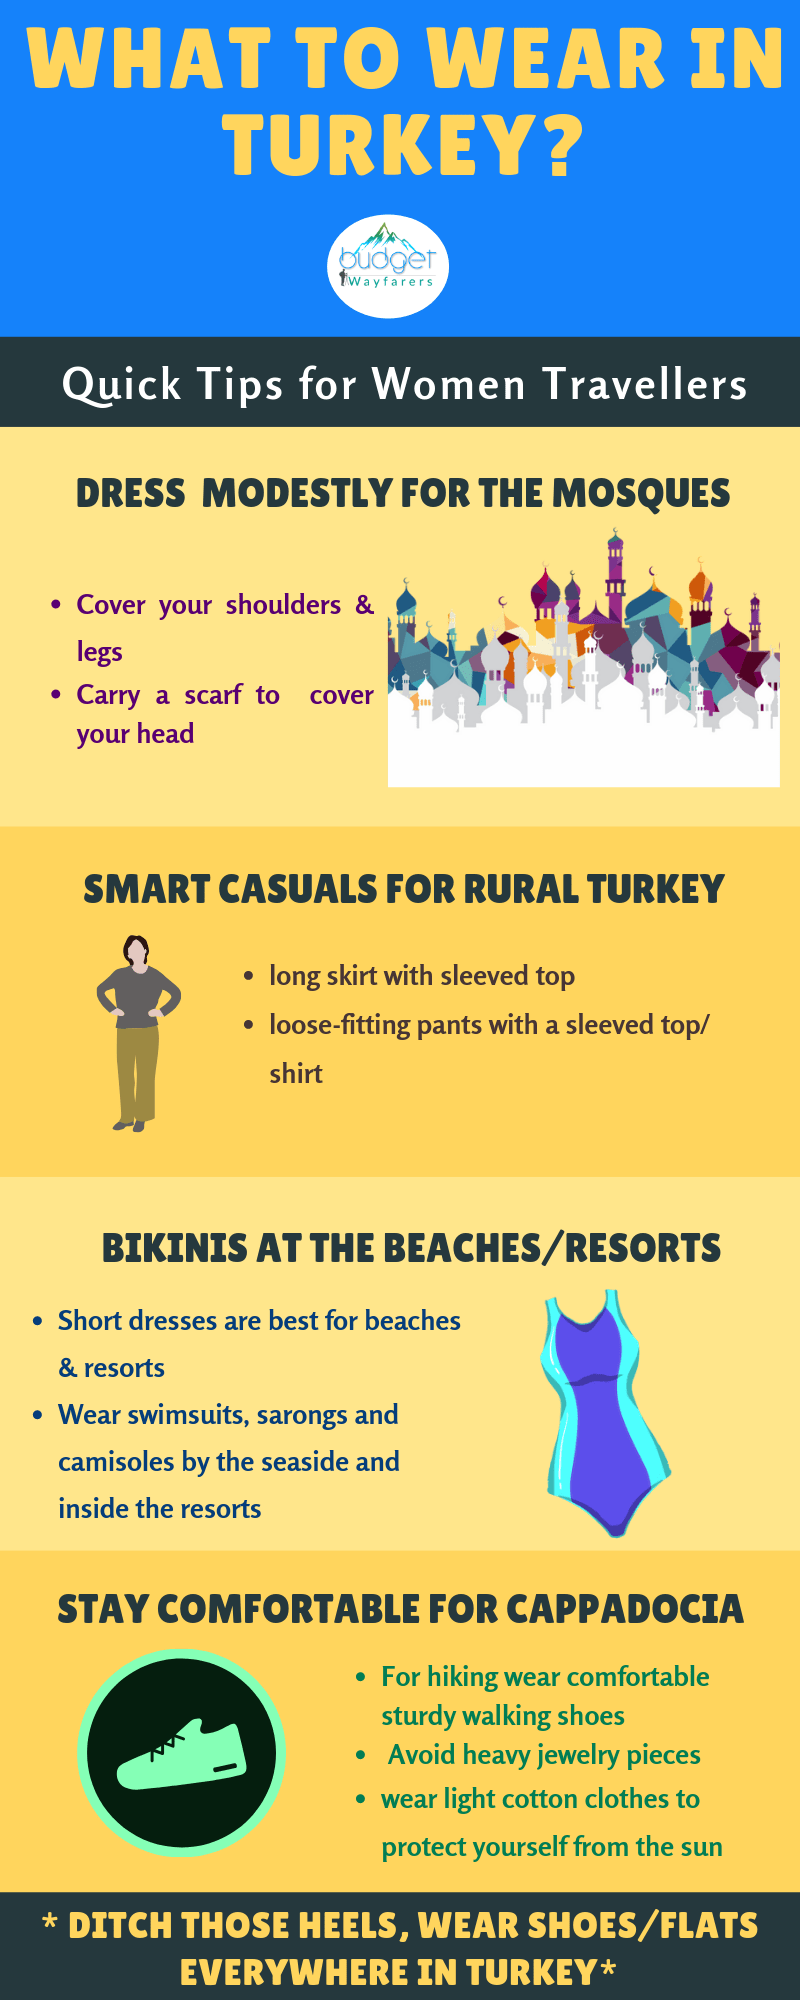 turkey dress code for women